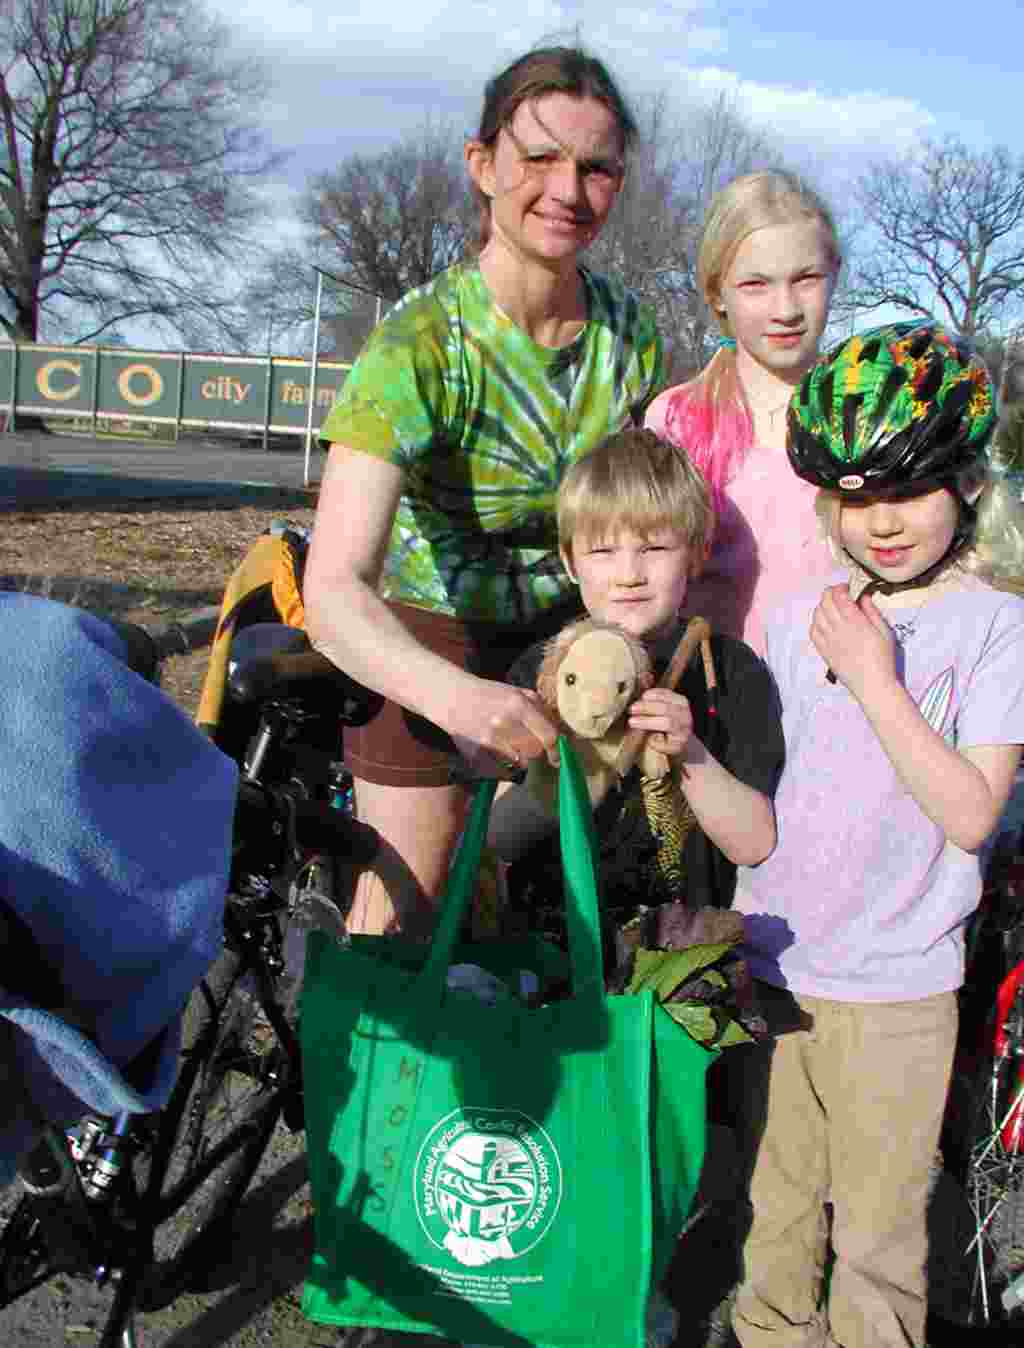 La familia Moss viene en bicicleta cada semana para recoger su parte de la cosecha.